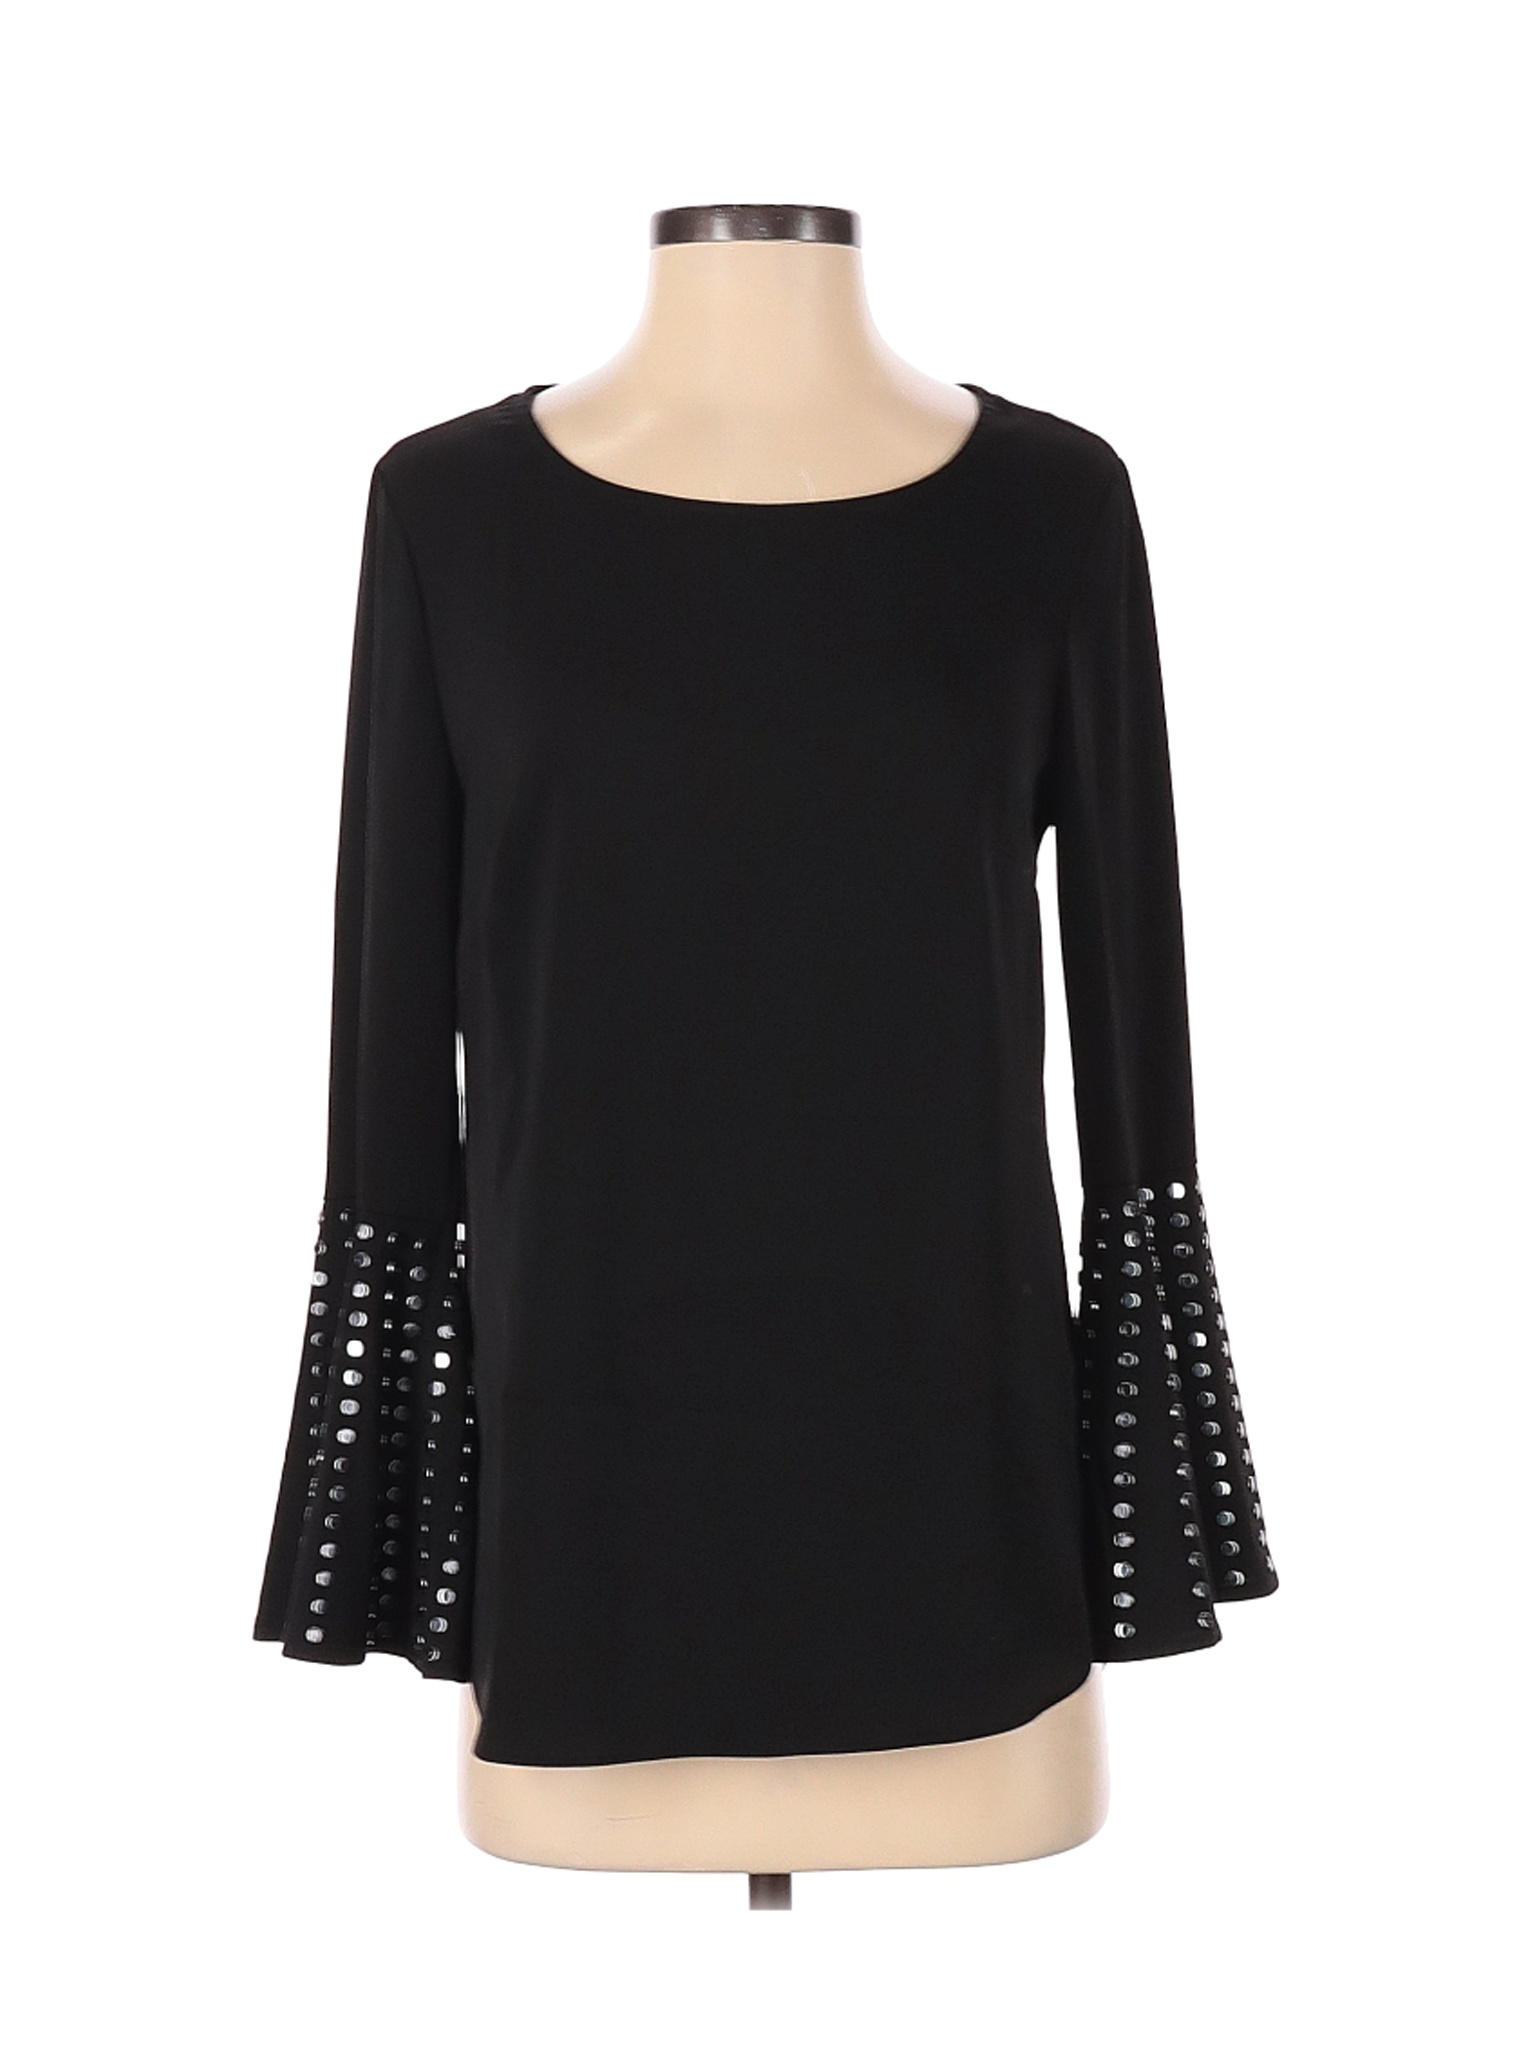 Carre Noir Women Black Long Sleeve Blouse XS | eBay